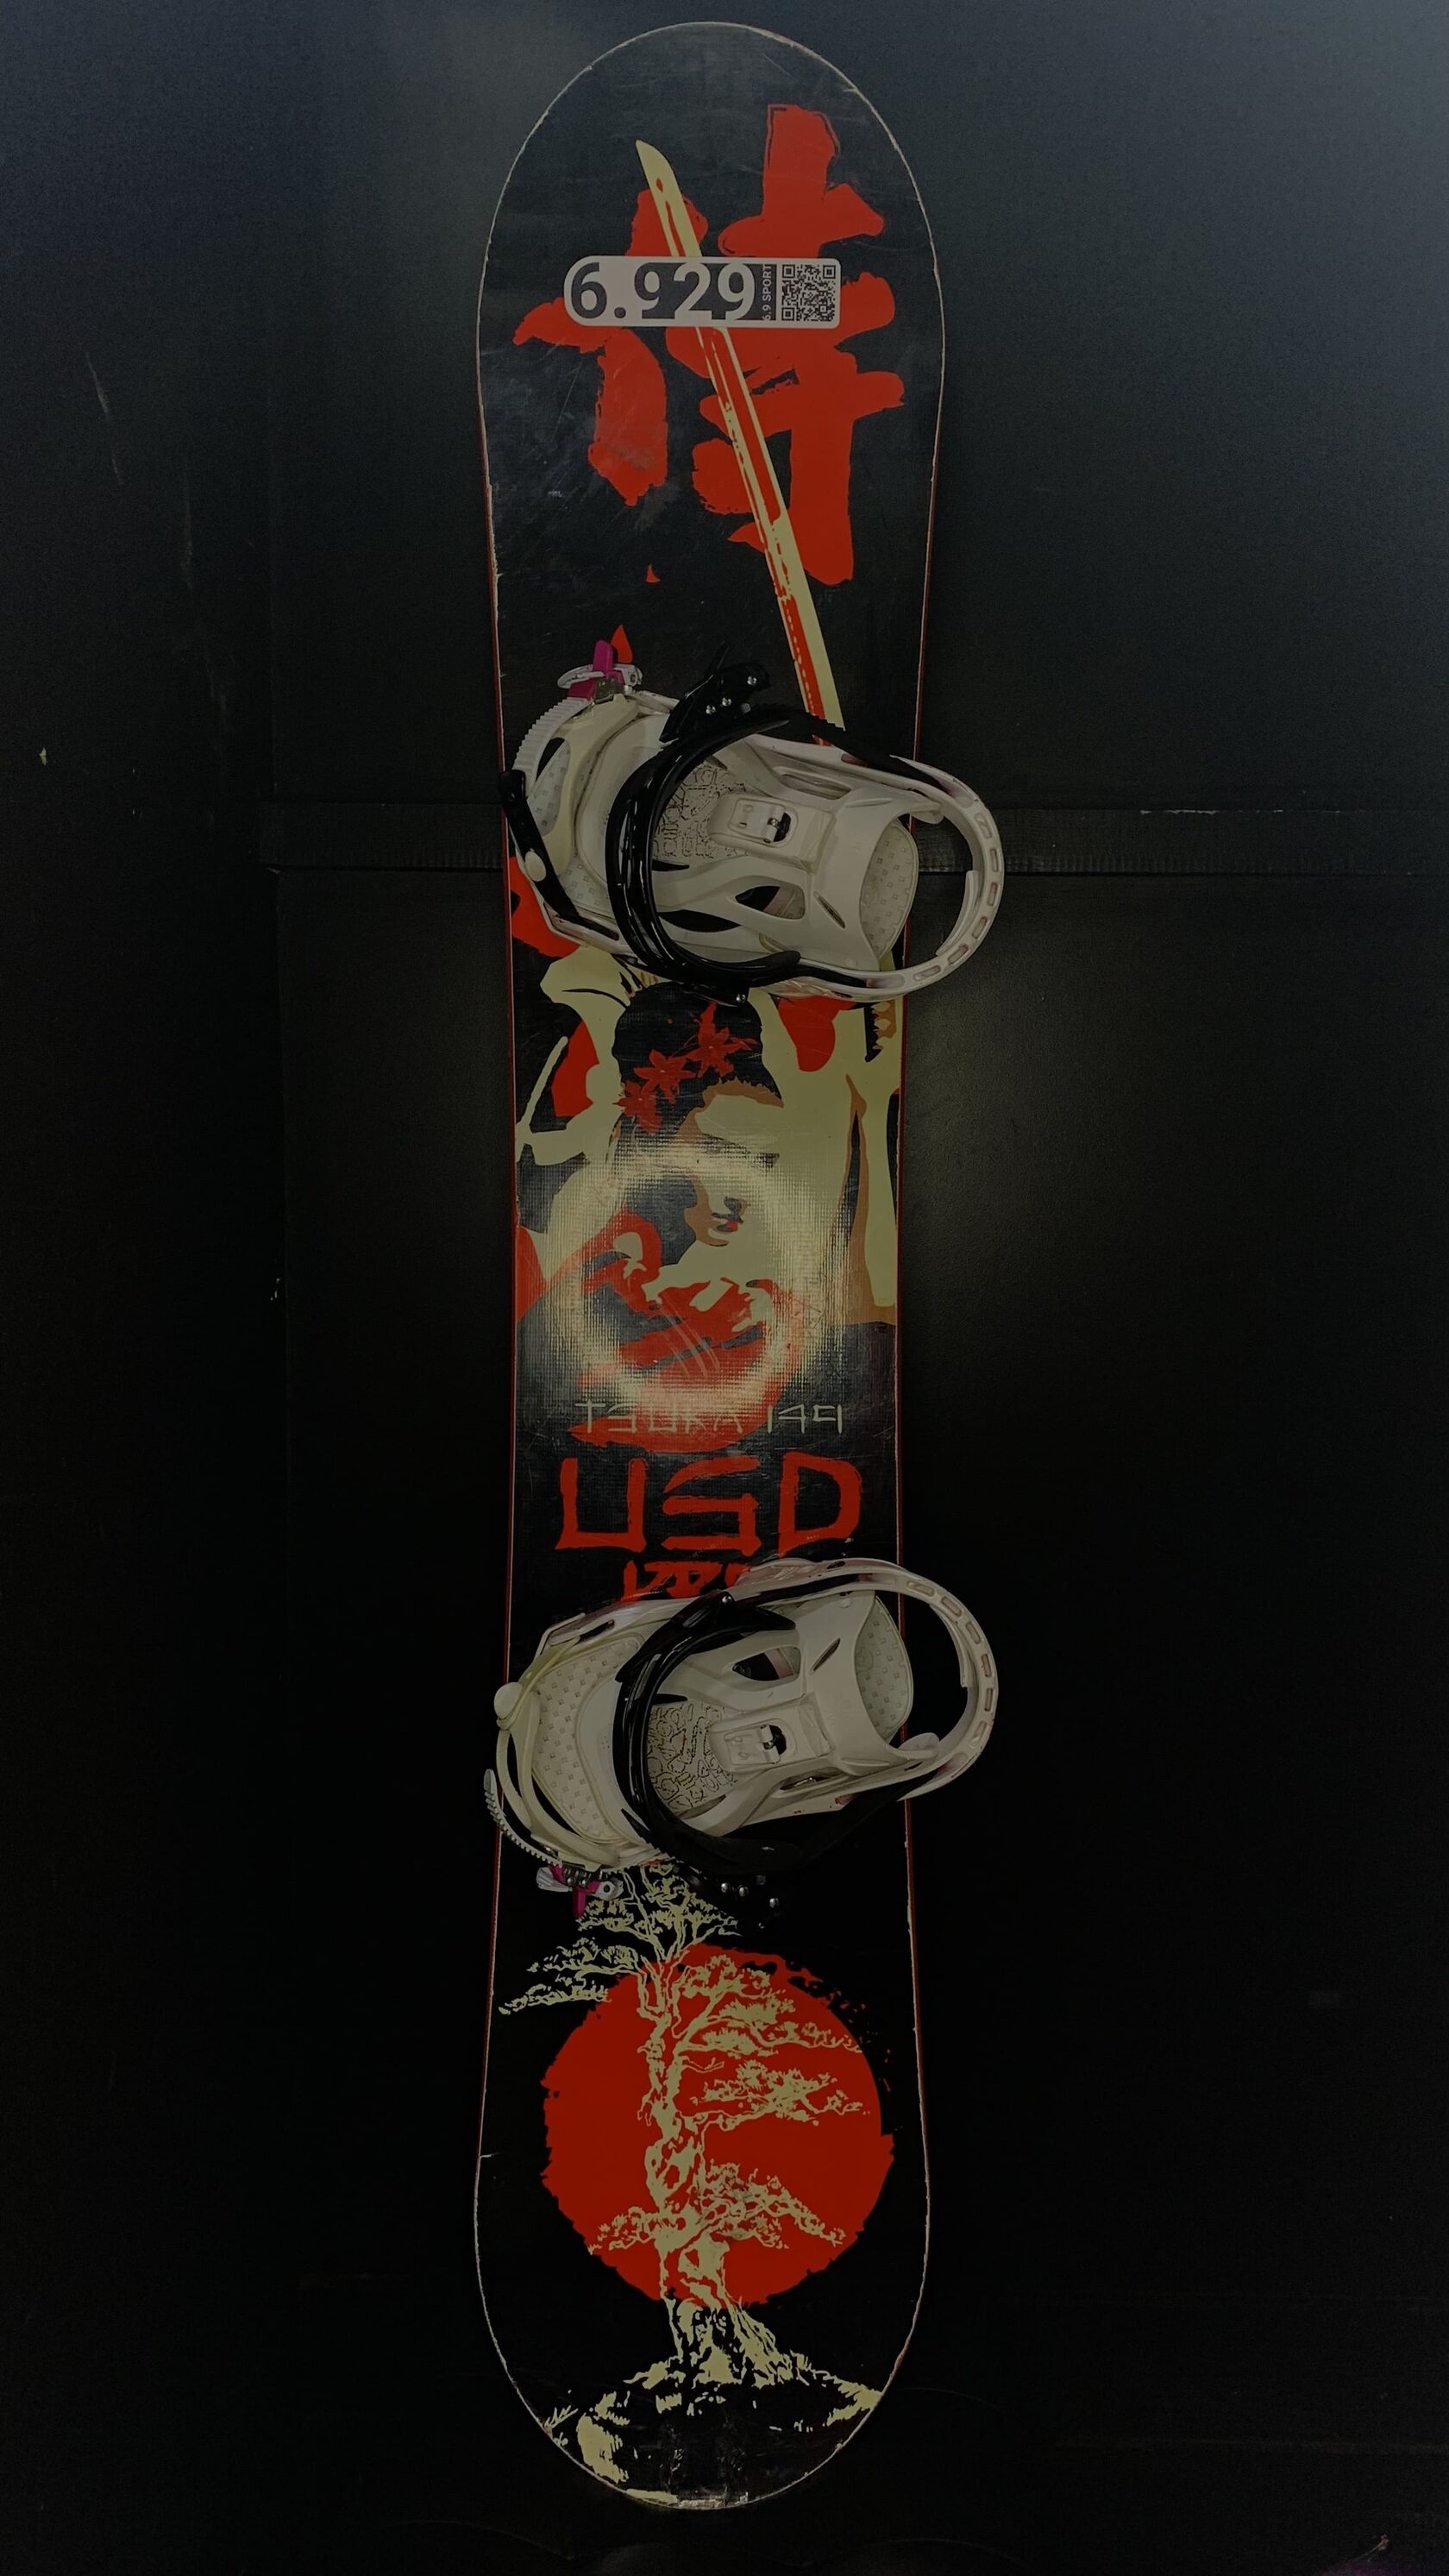 Сноуборд USD Tsuka 149 - прокат сноубордов в Омске